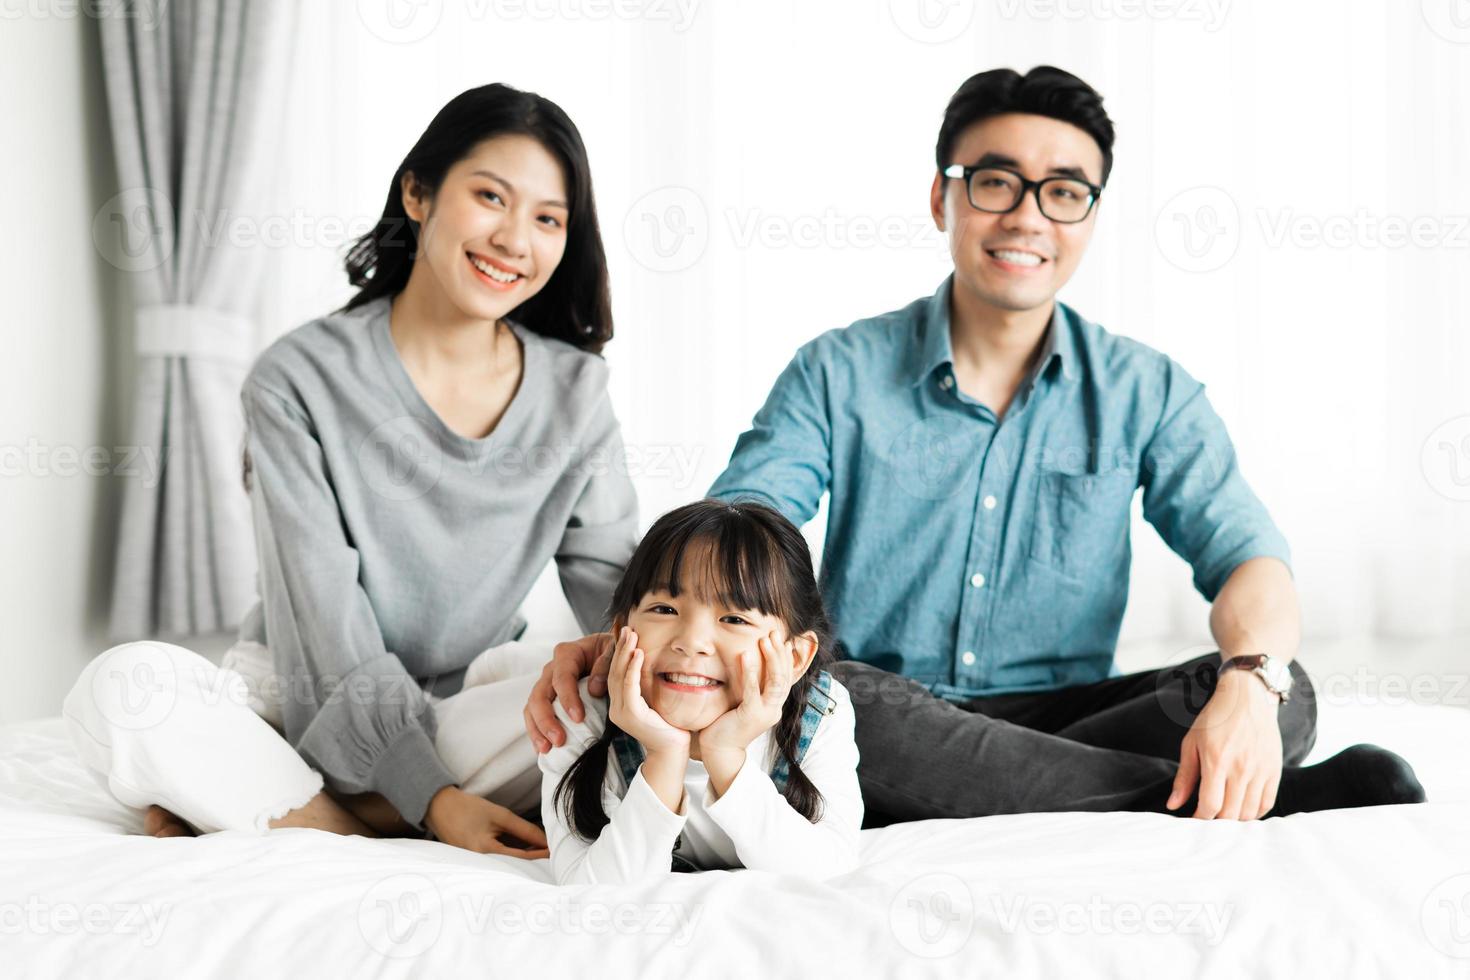 petit portrait de famille asiatique à la maison photo